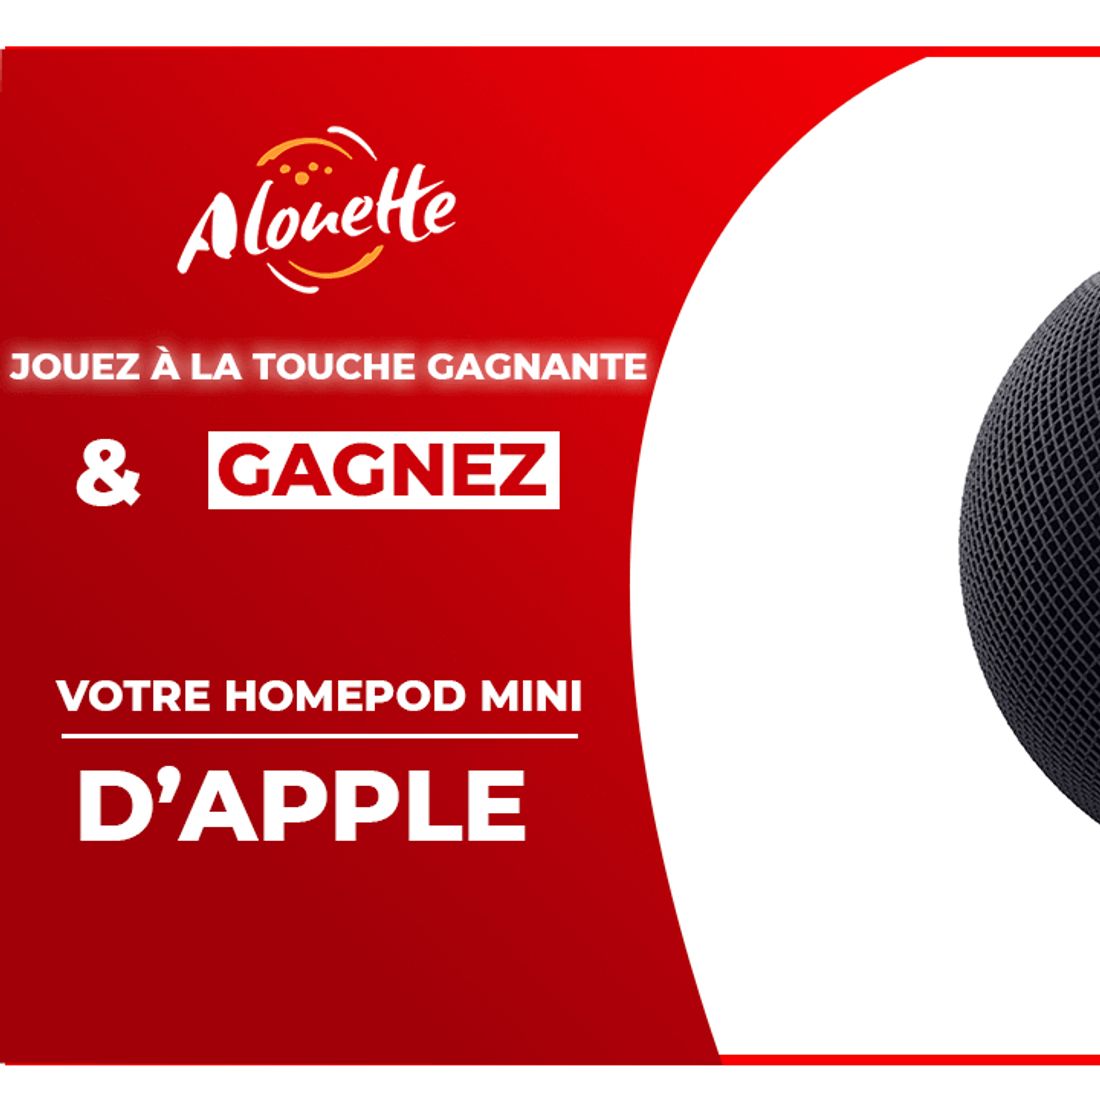 La Touche Gagnante - Alouette vous offre un HomePod mini !